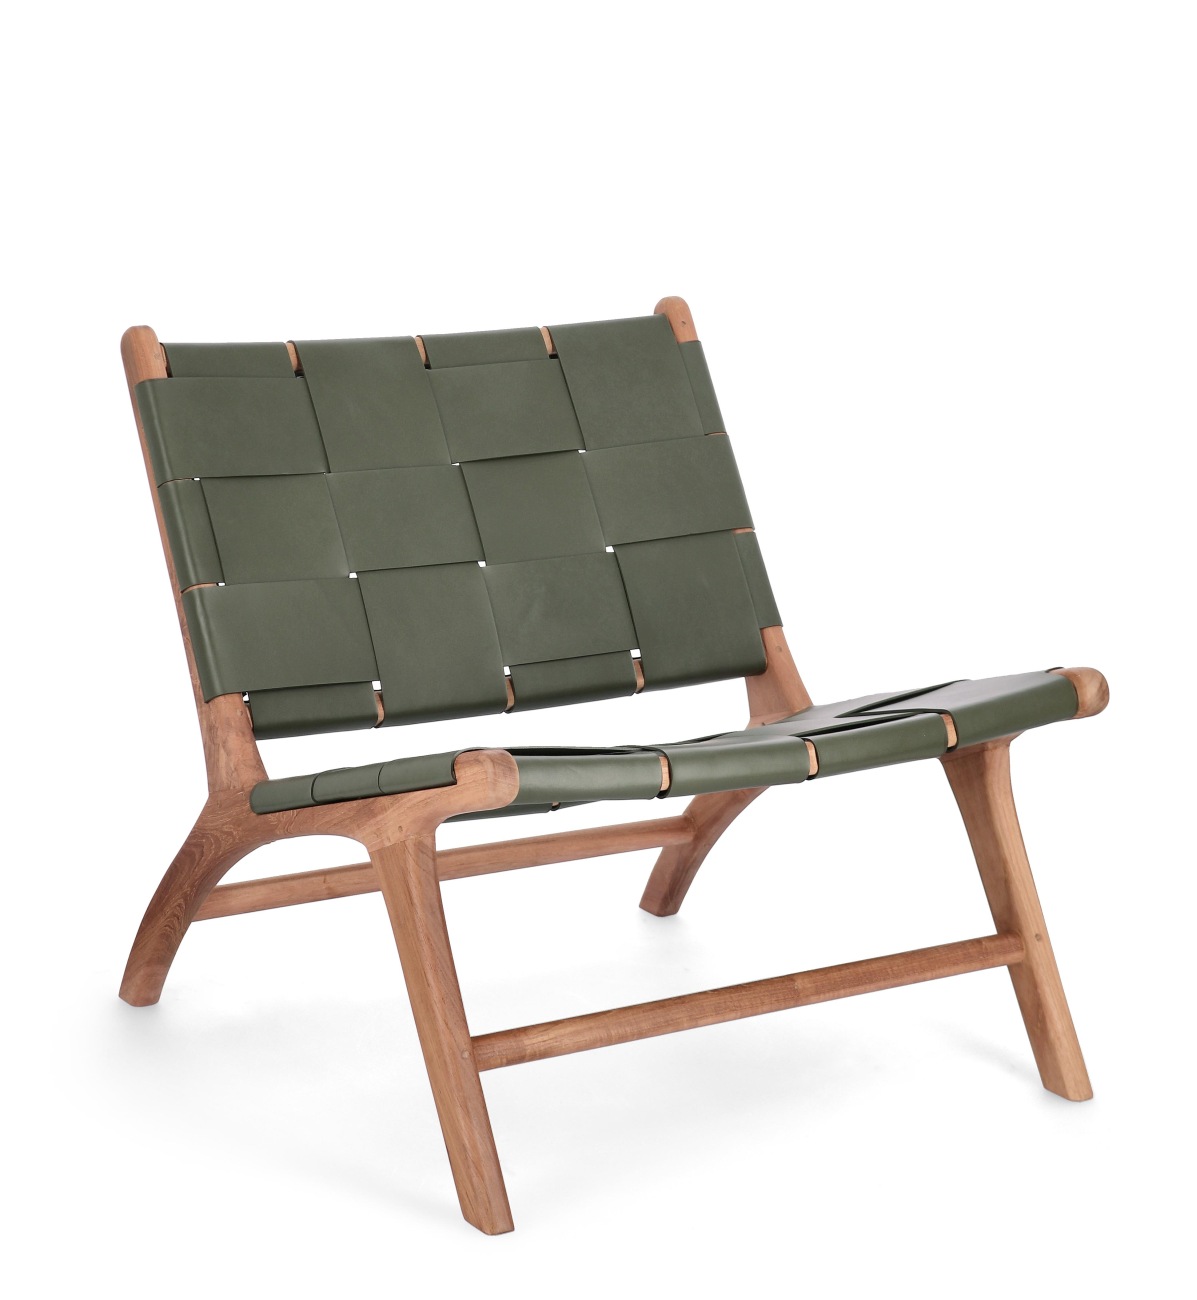 Der Sessel Joanna überzeugt mit seinem modernen Stil. Gefertigt wurde er aus Leder, welches einen grünenFarbton besitzt. Das Gestell ist aus Teakholz und hat eine natürliche Farbe. Der Sessel besitzt eine Sitzhöhe von 39 cm.